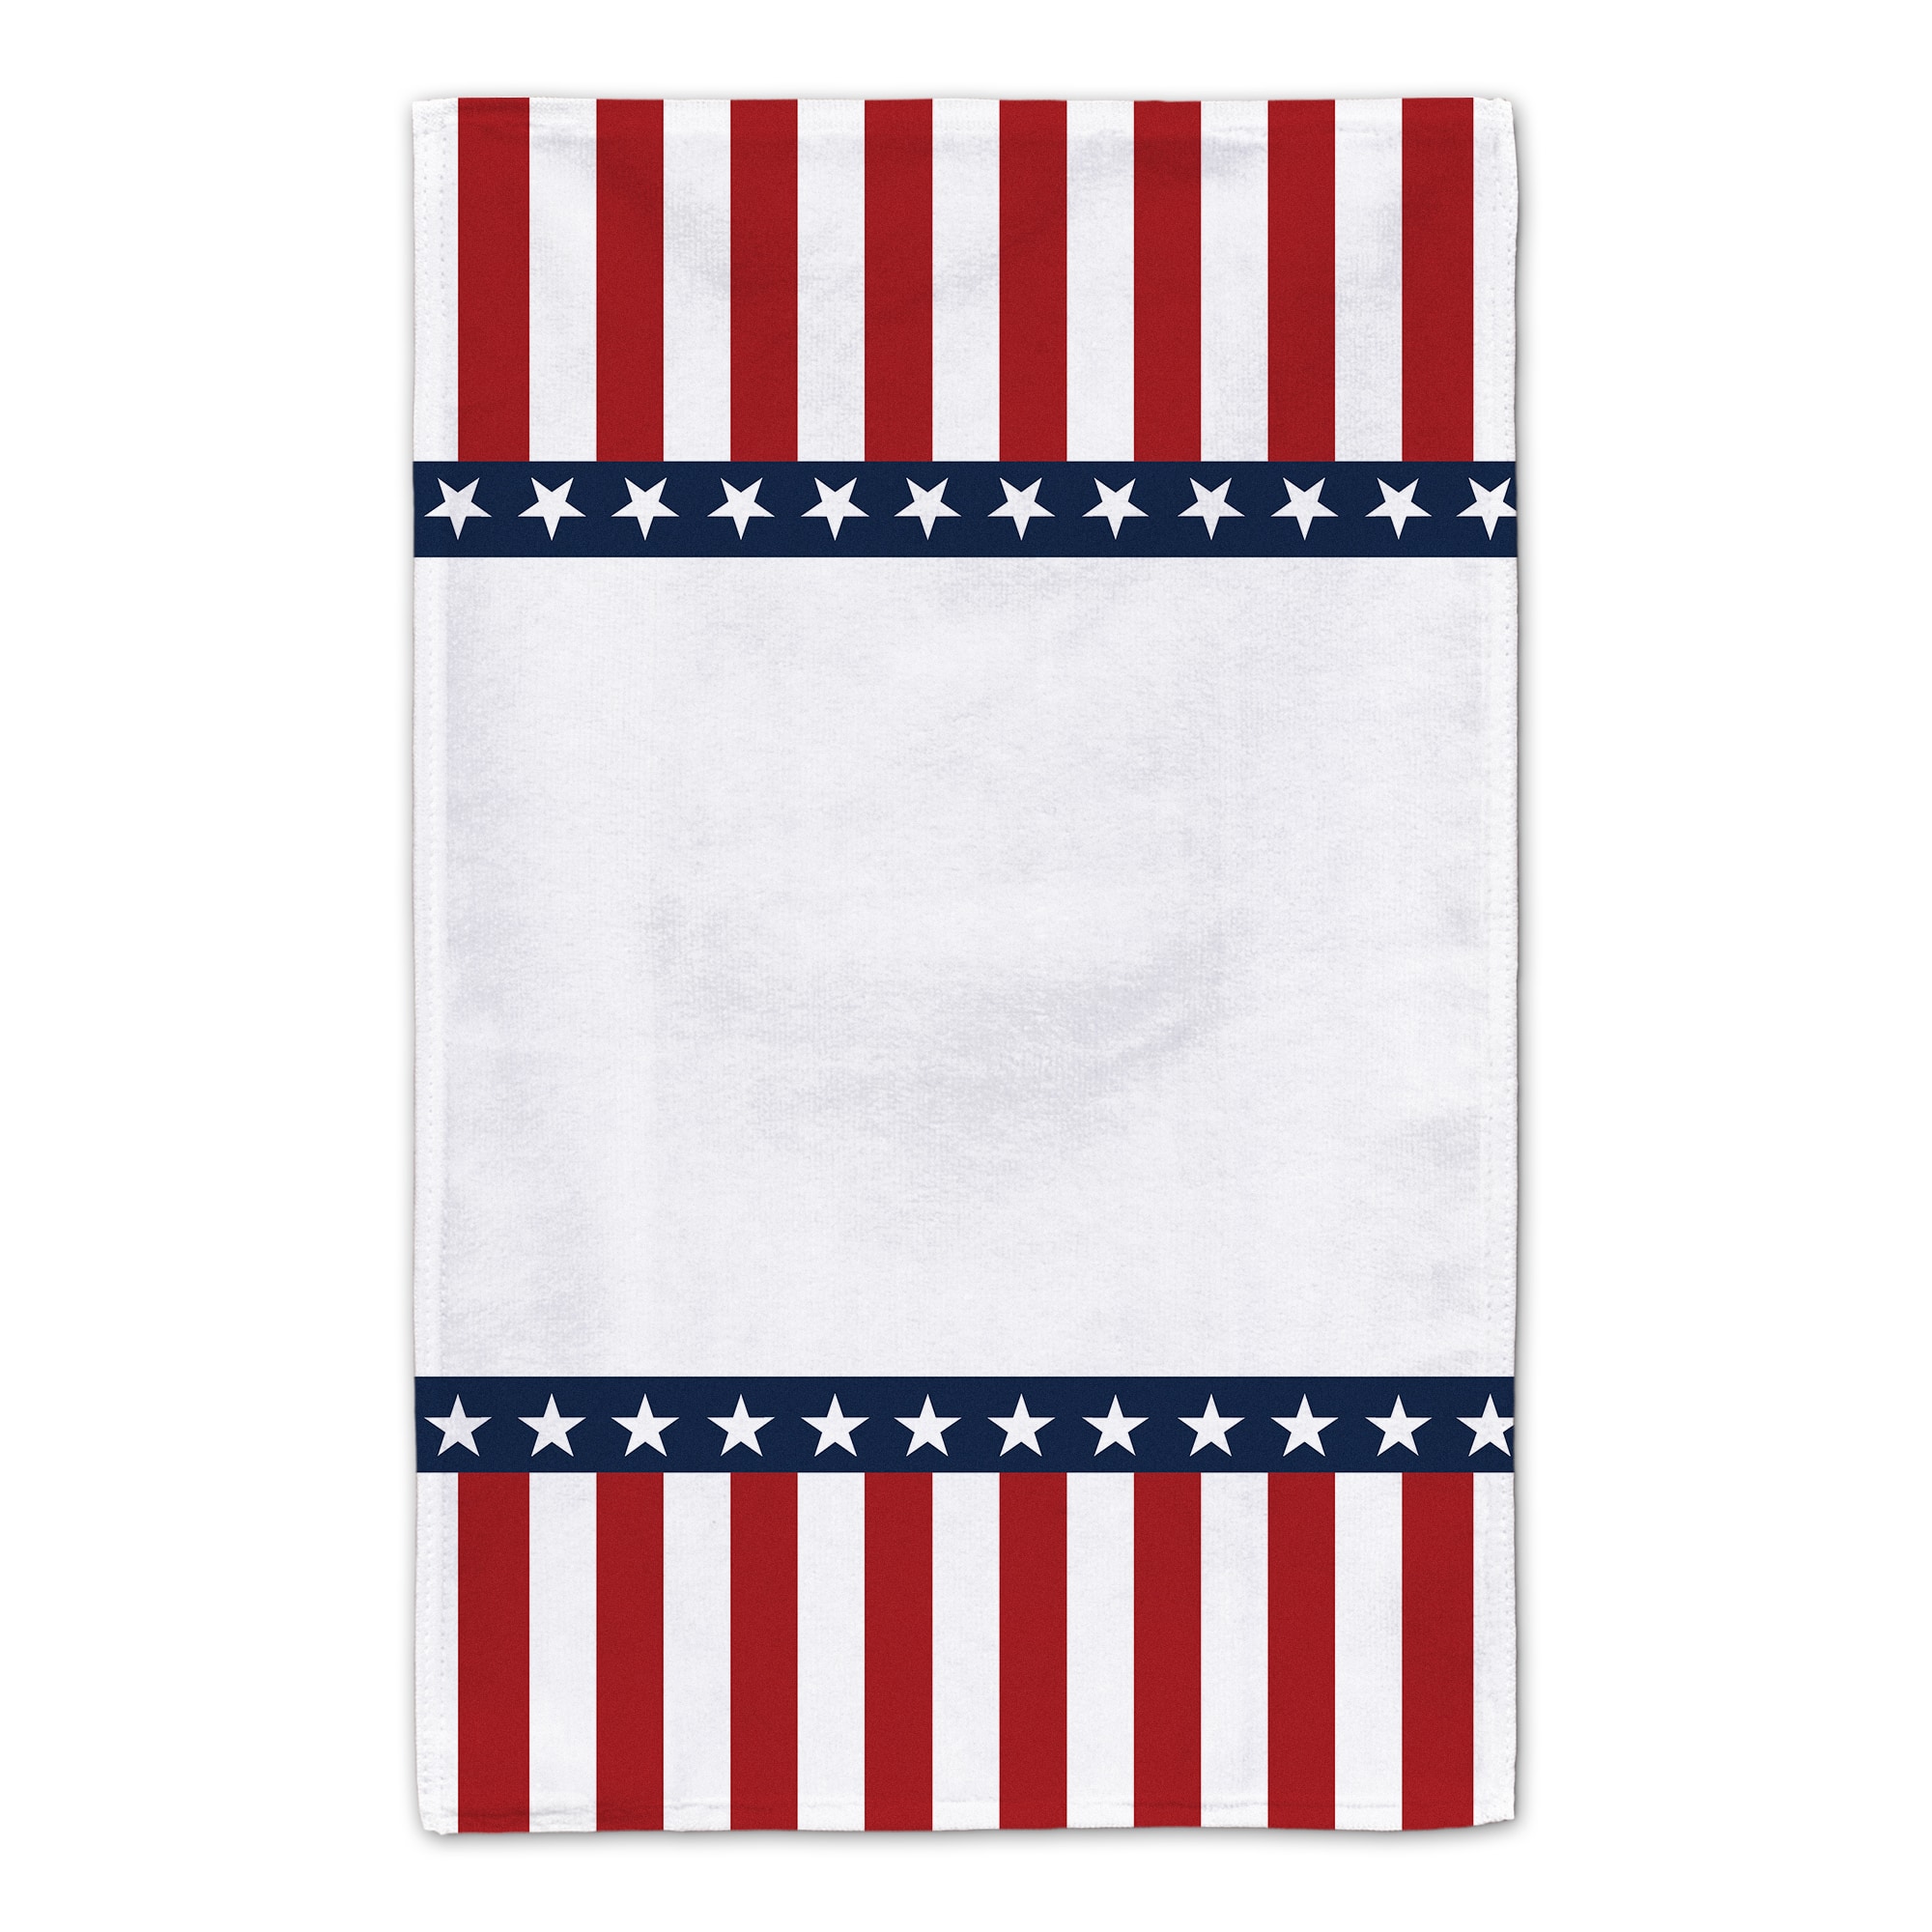 Est. 1776 Tea Towel Set